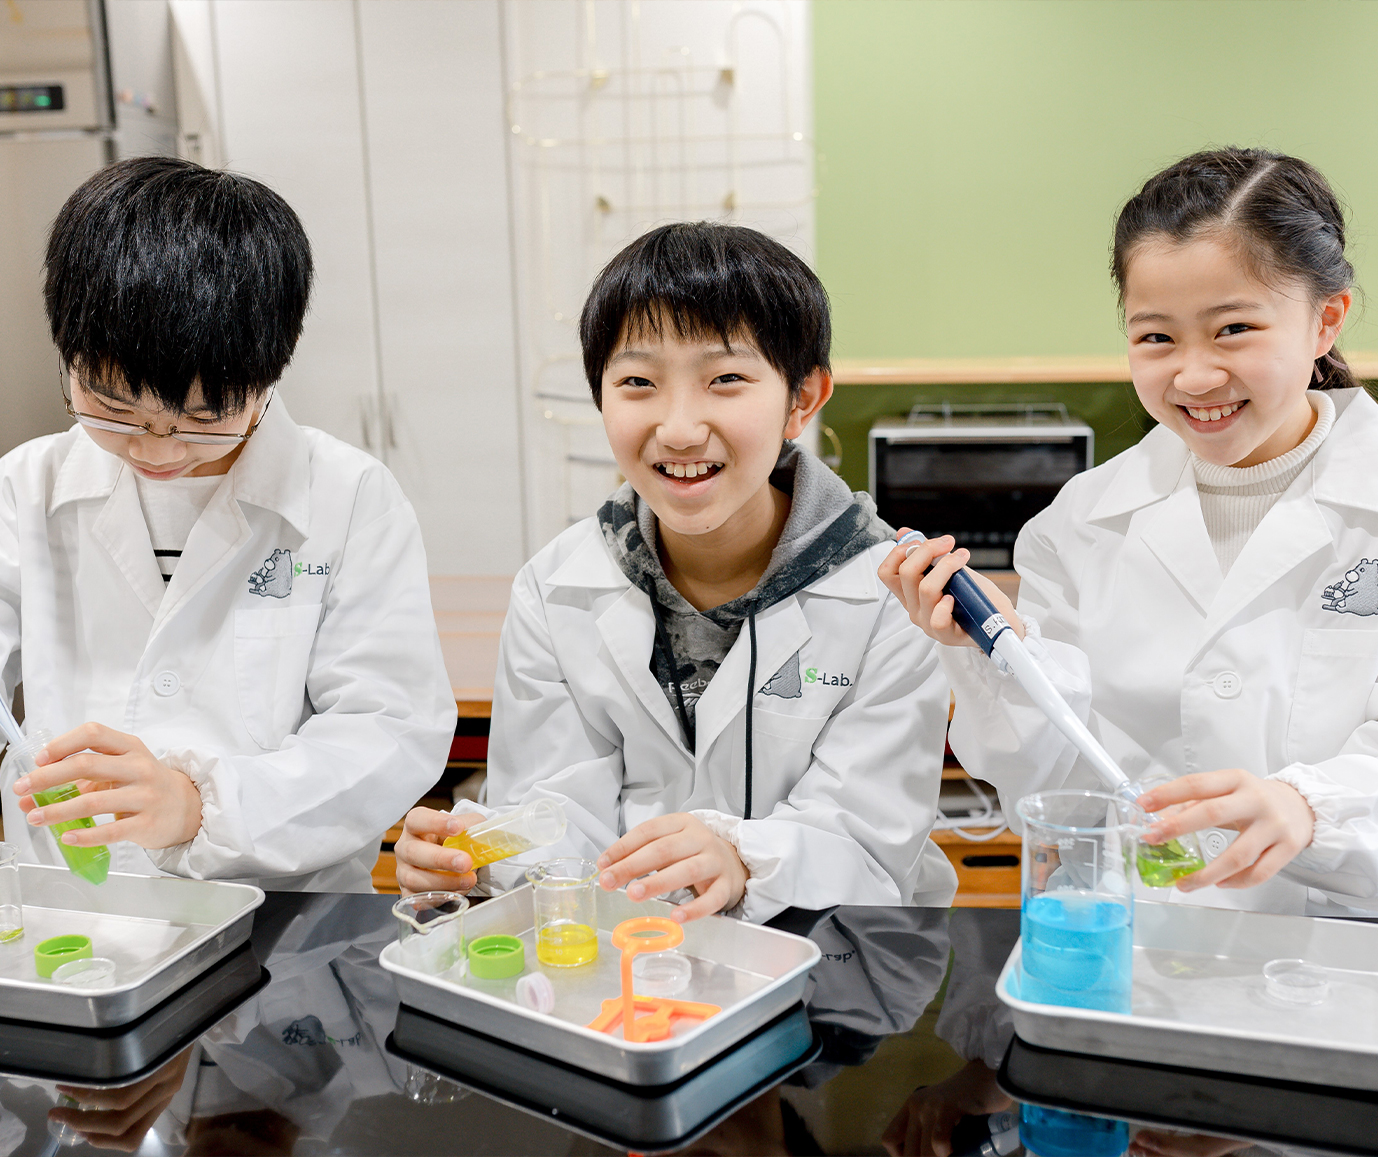 科学と製菓による革新的STEAM教育教室S-Lab.